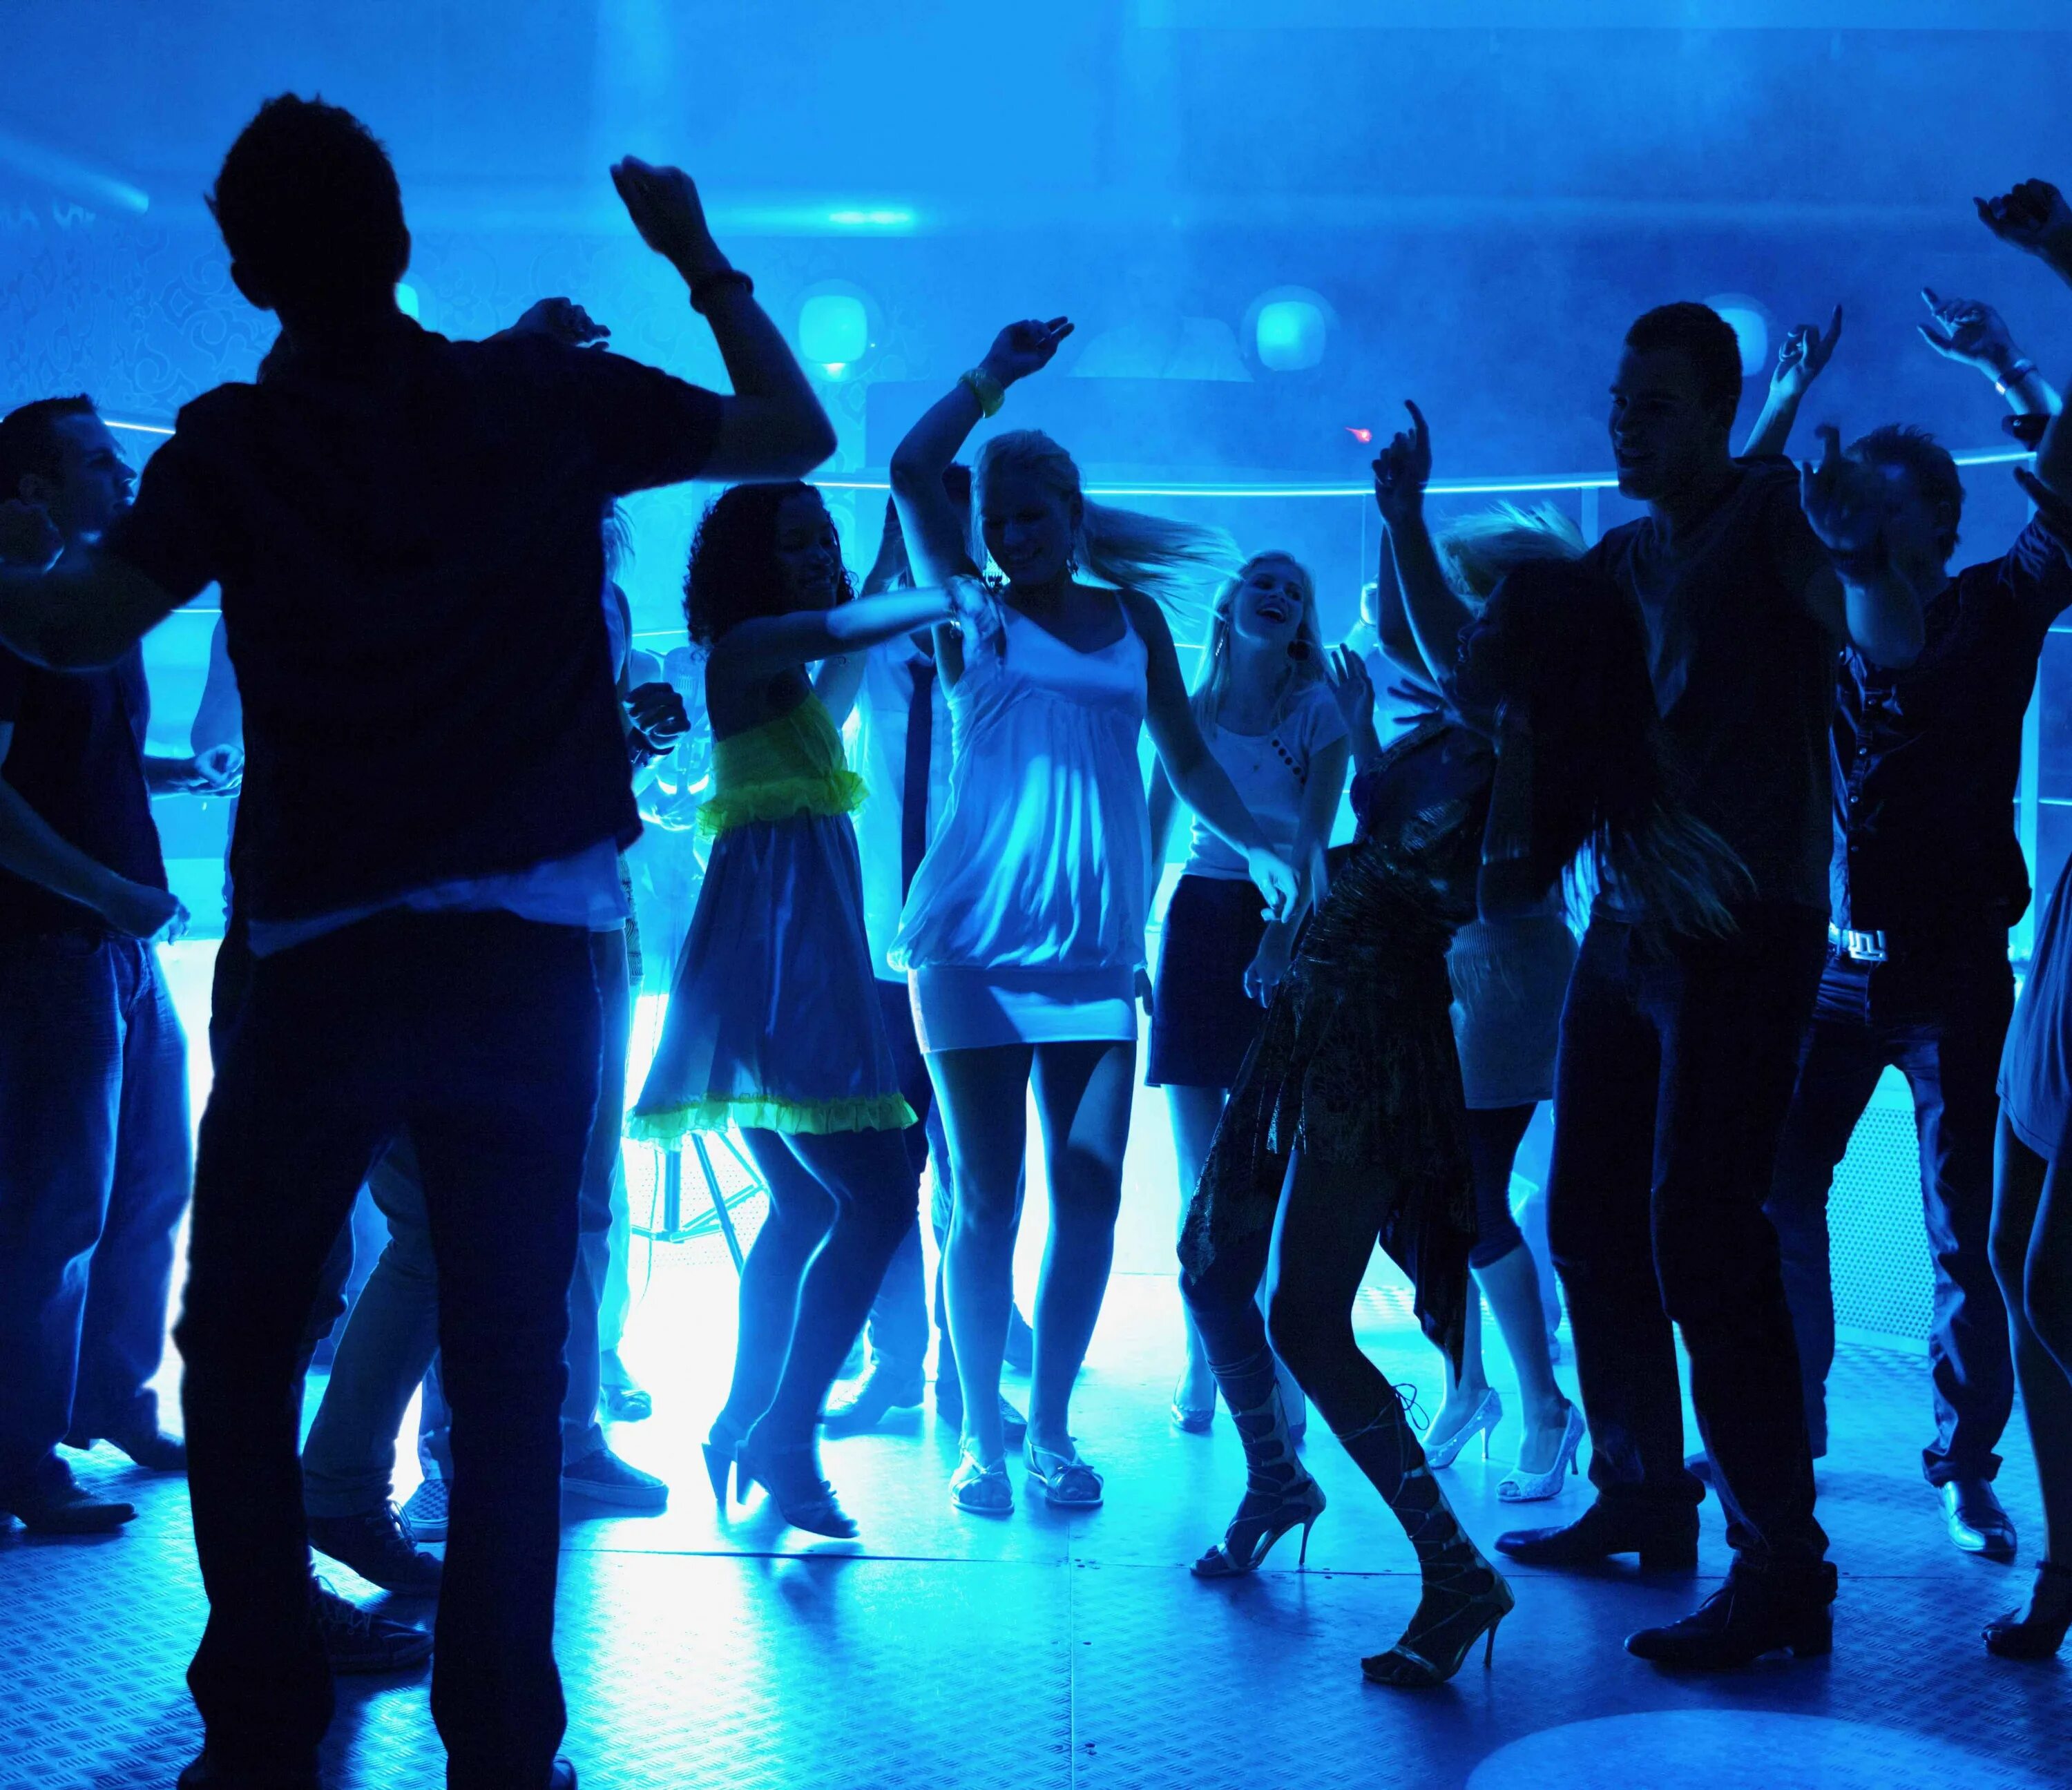 Dj disco party. Ночная дискотека. Клубные танцы. Танцы в клубе. Люди танцуют на дискотеке.